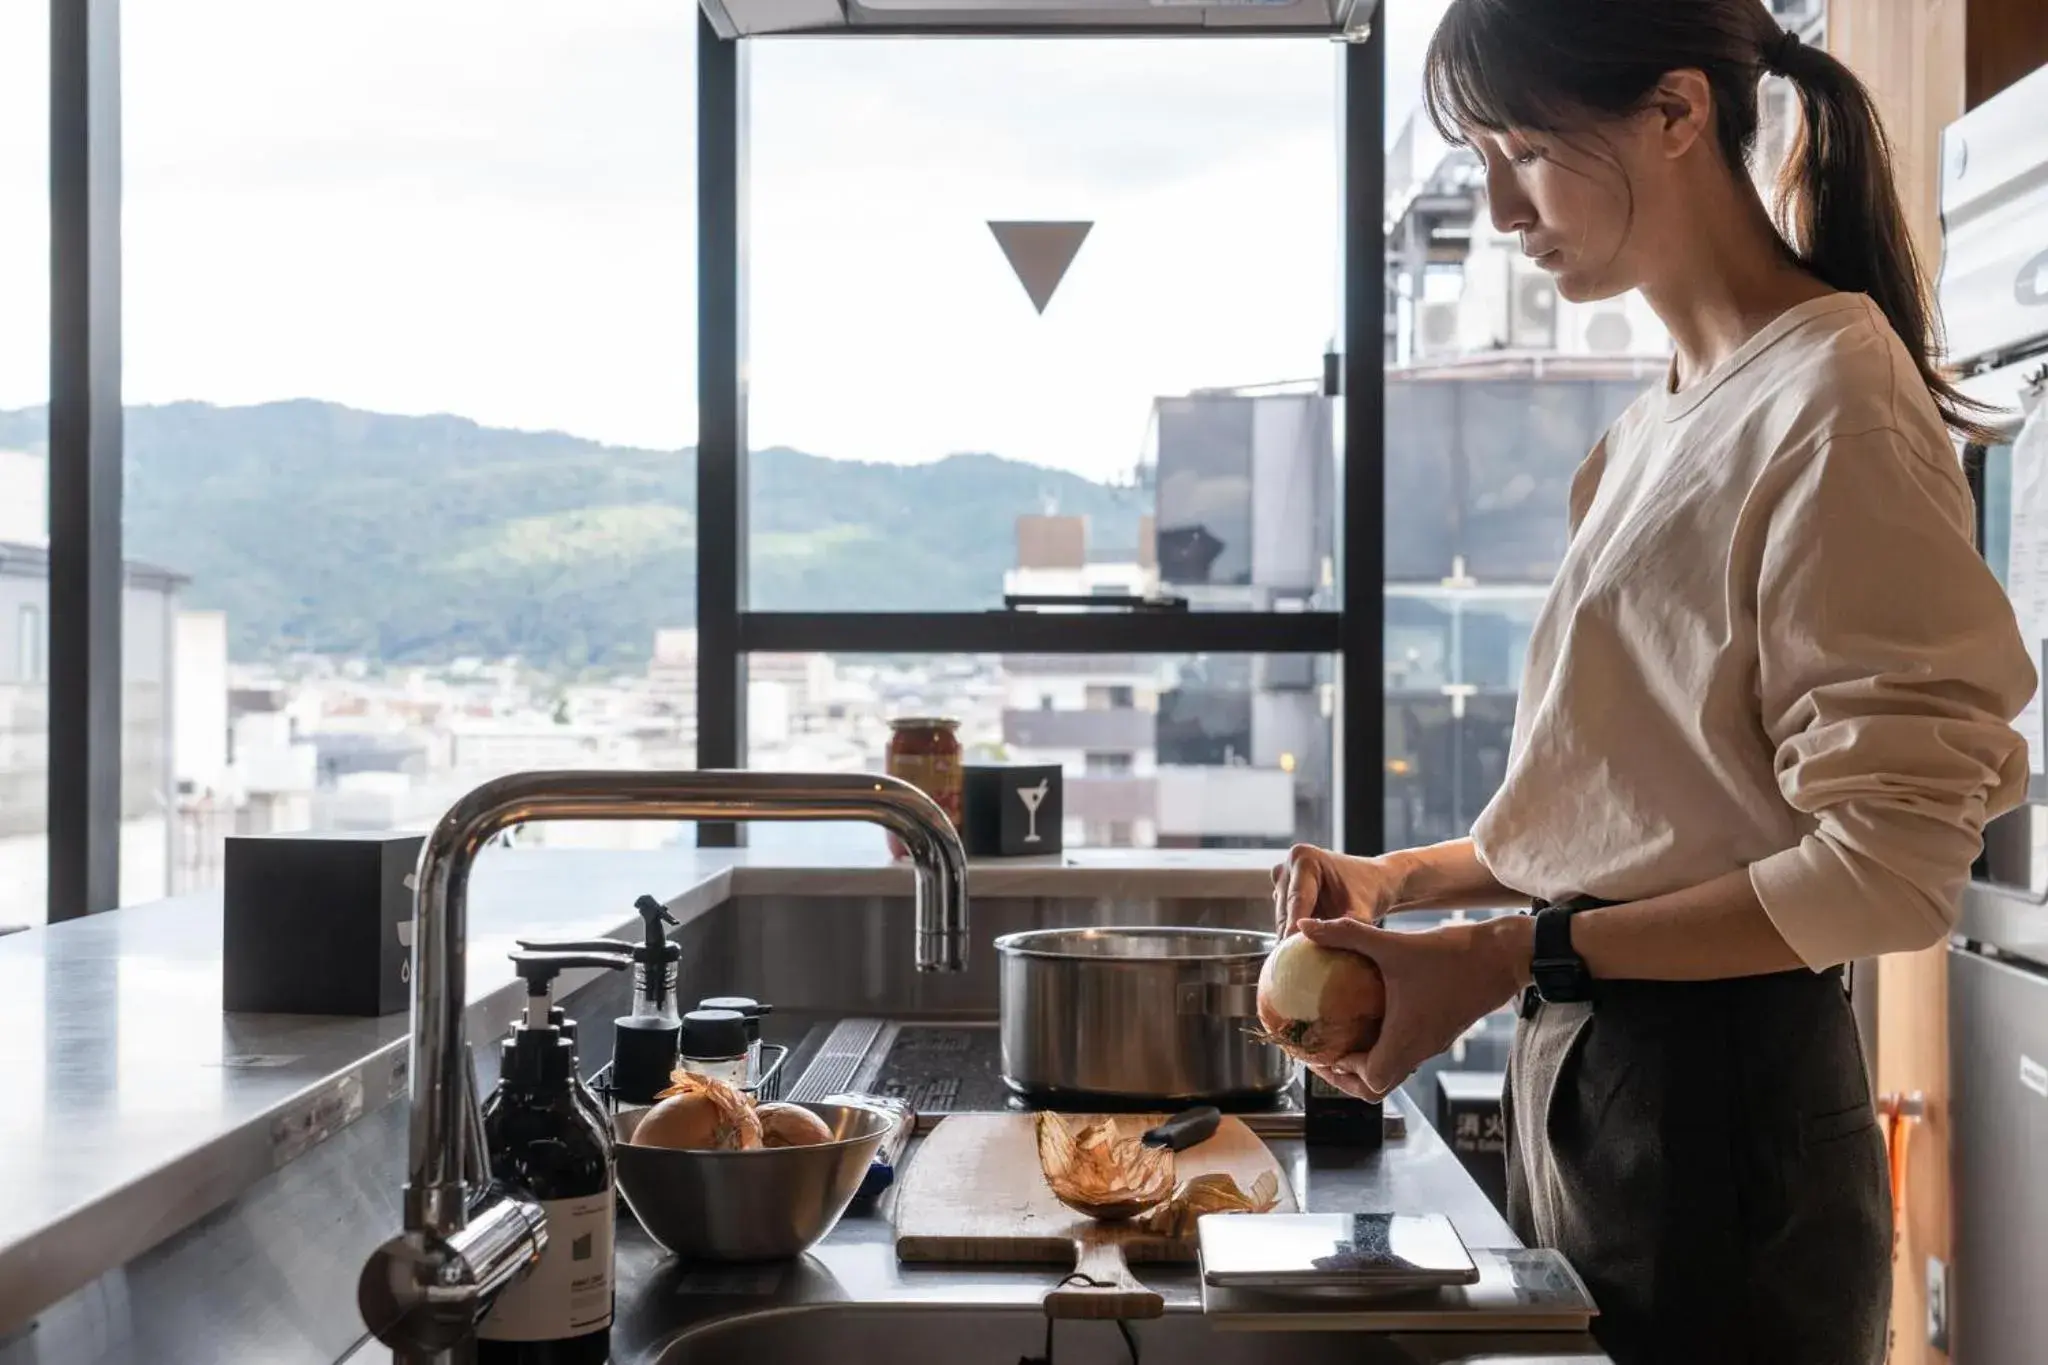 Communal kitchen in The Millennials Kyoto